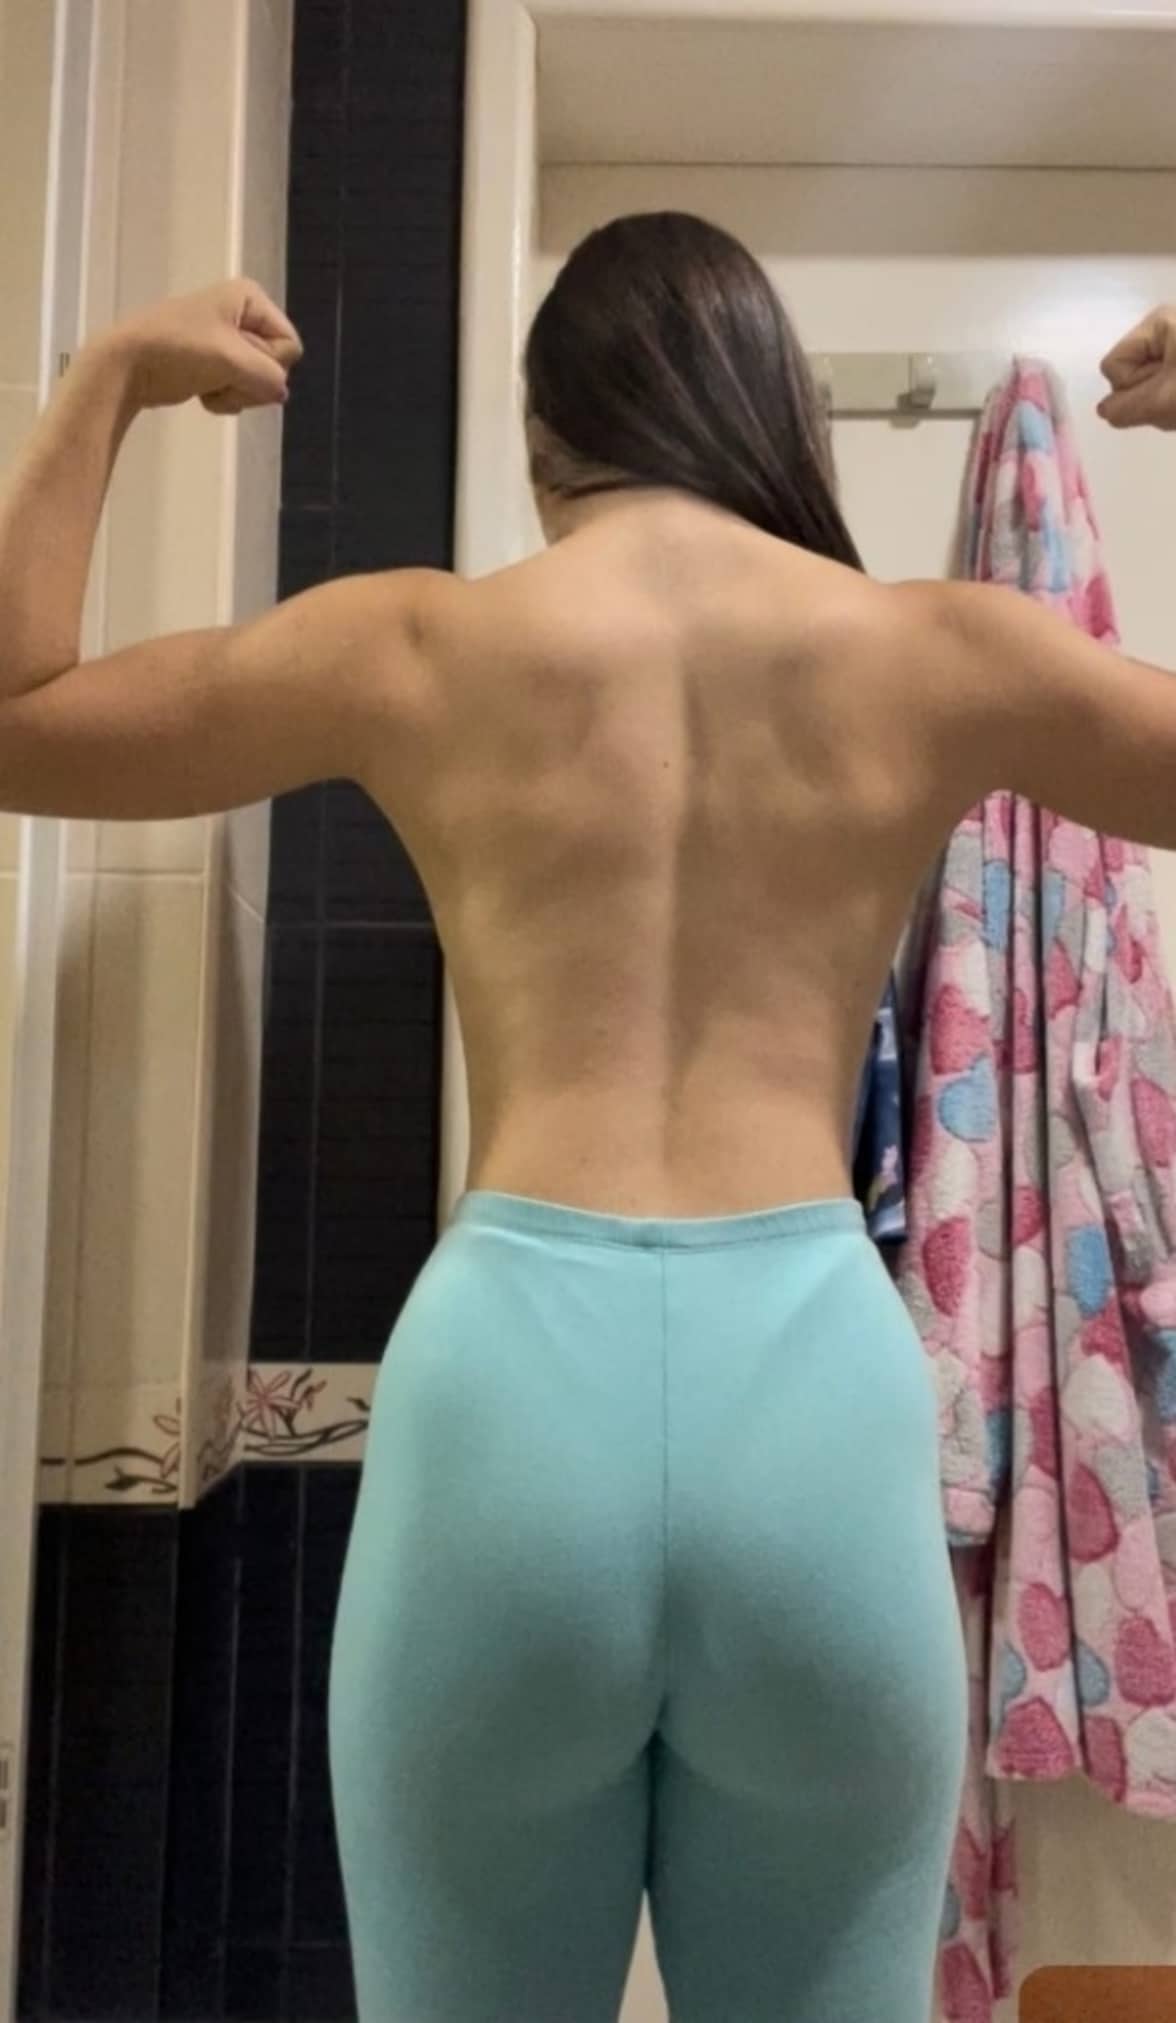 Gym girl topless back